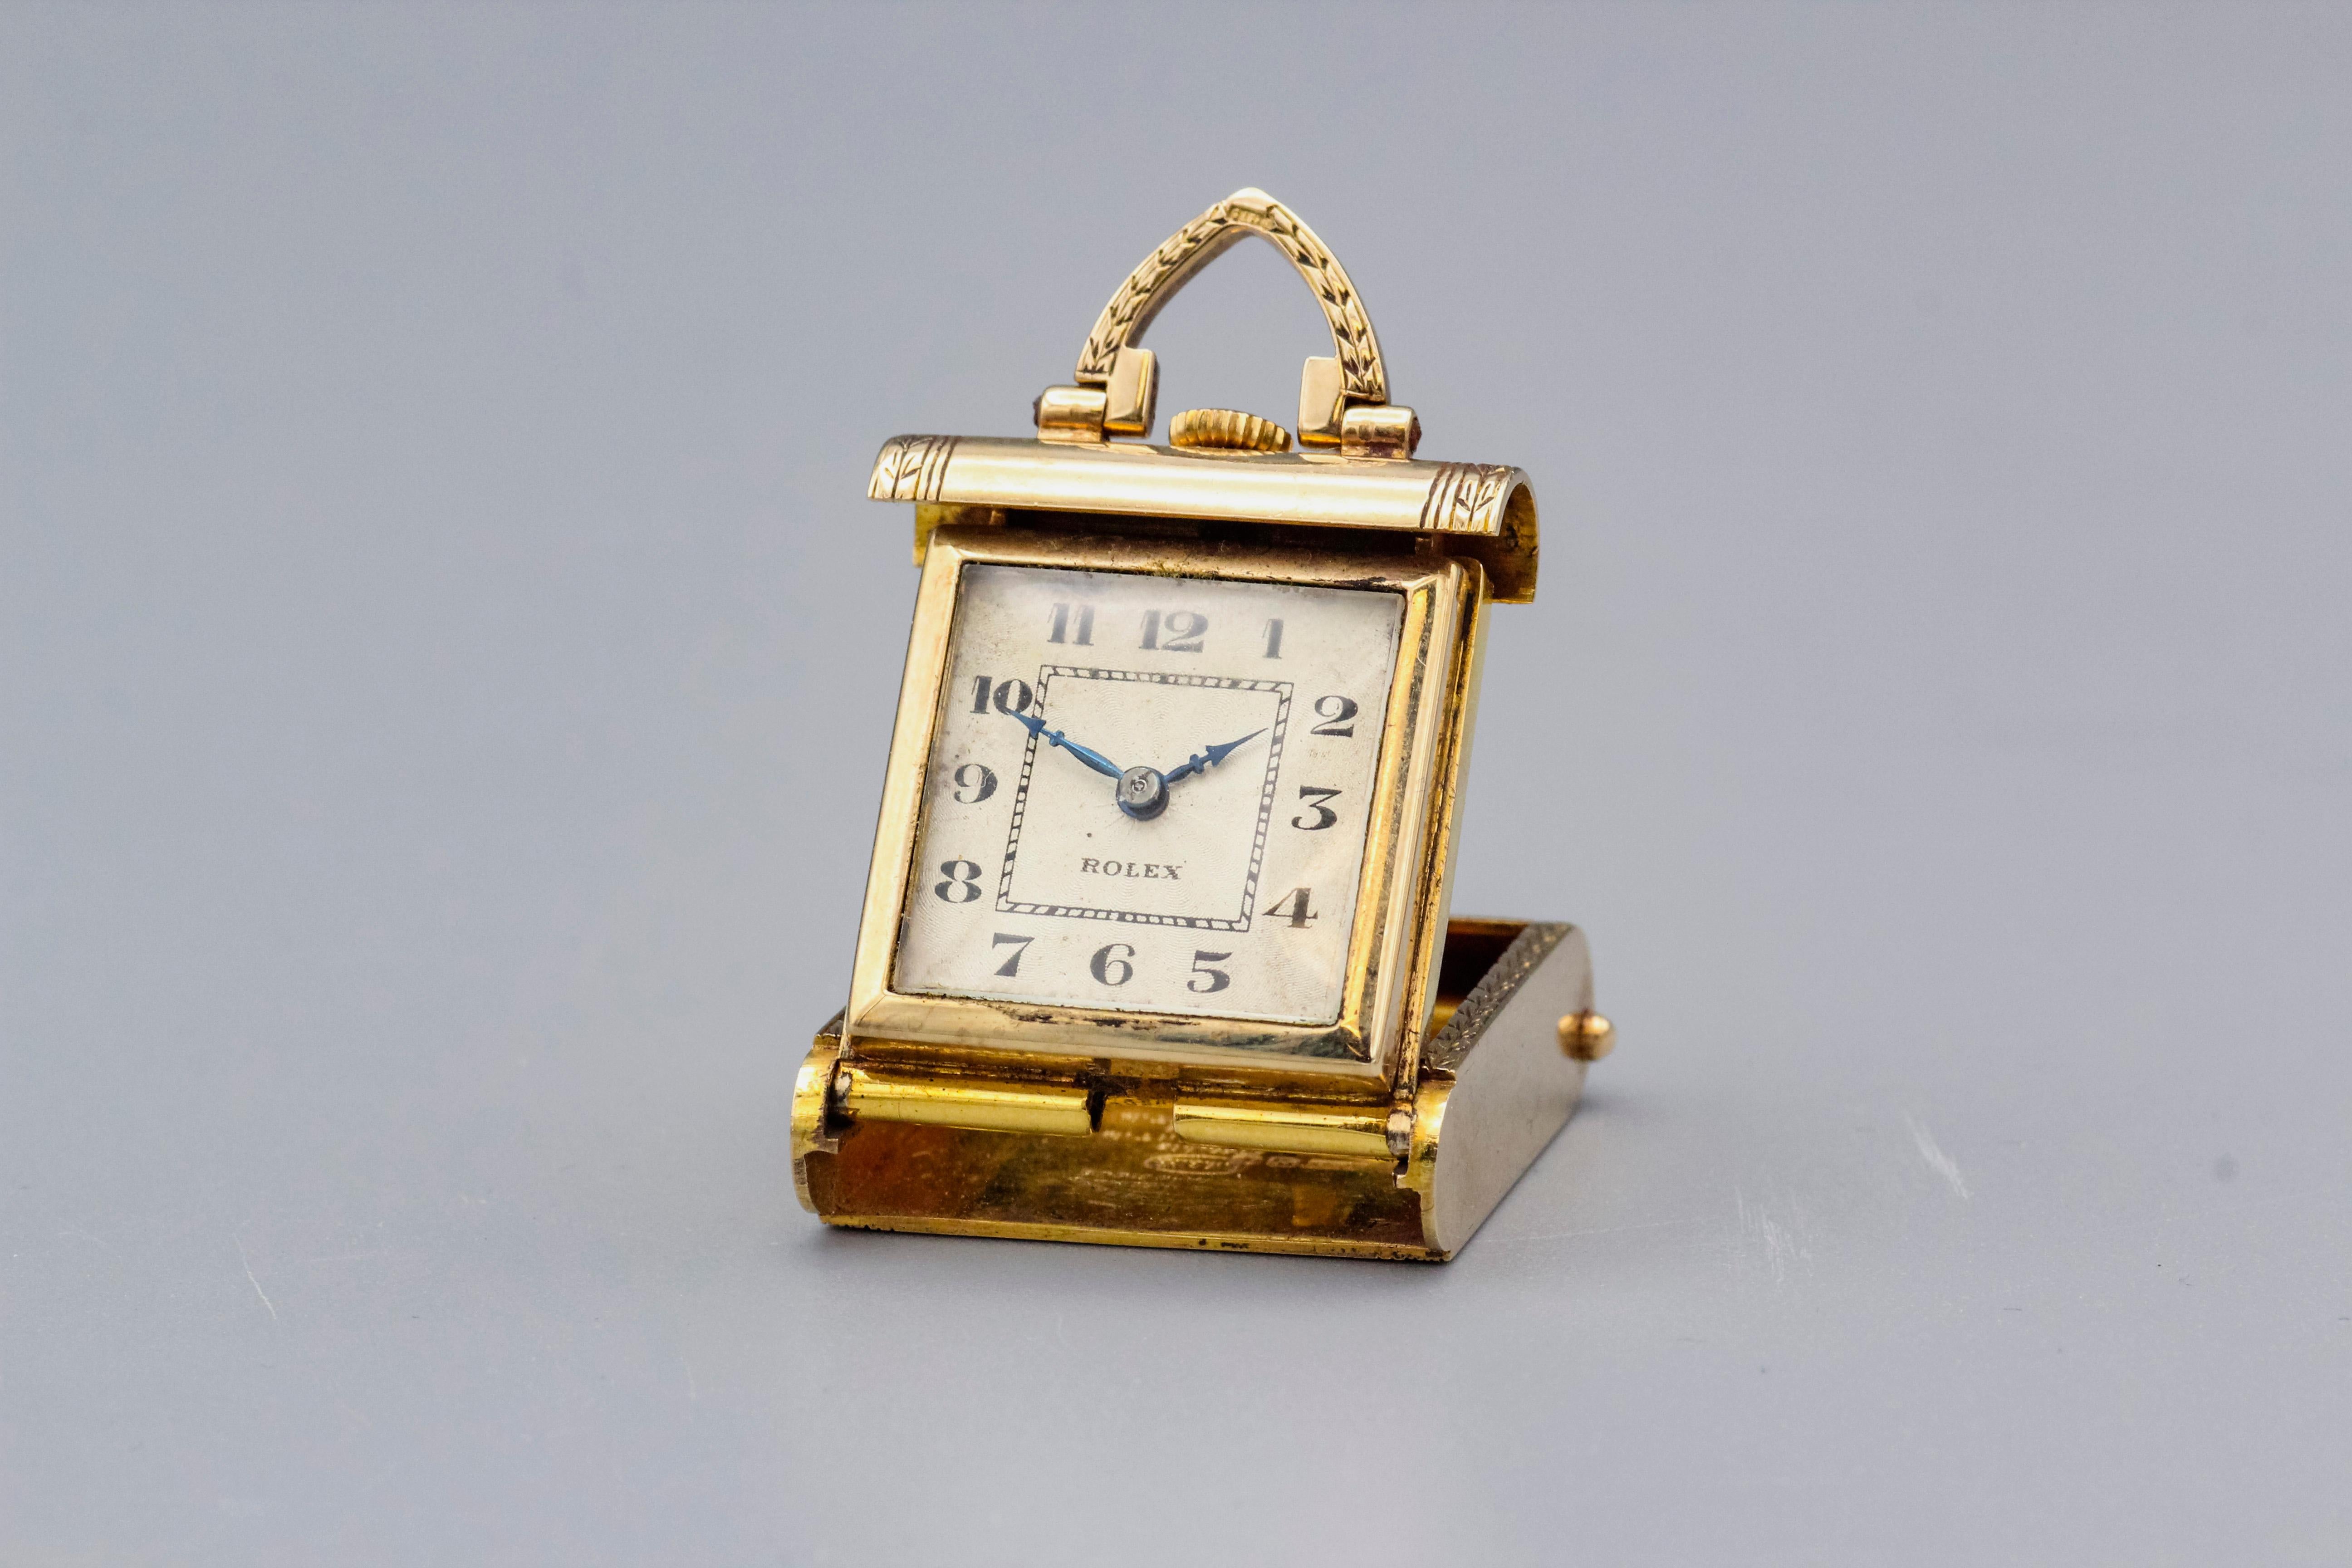 Voyage dans le temps : une rare horloge de voyage Rolex en or 9k (Circa 1940s)

Embarquez pour un voyage dans le luxe vintage avec cette exceptionnelle horloge de voyage Rolex, fabriquée en or 9 carats et évoquant les années 1940. Plus qu'un simple